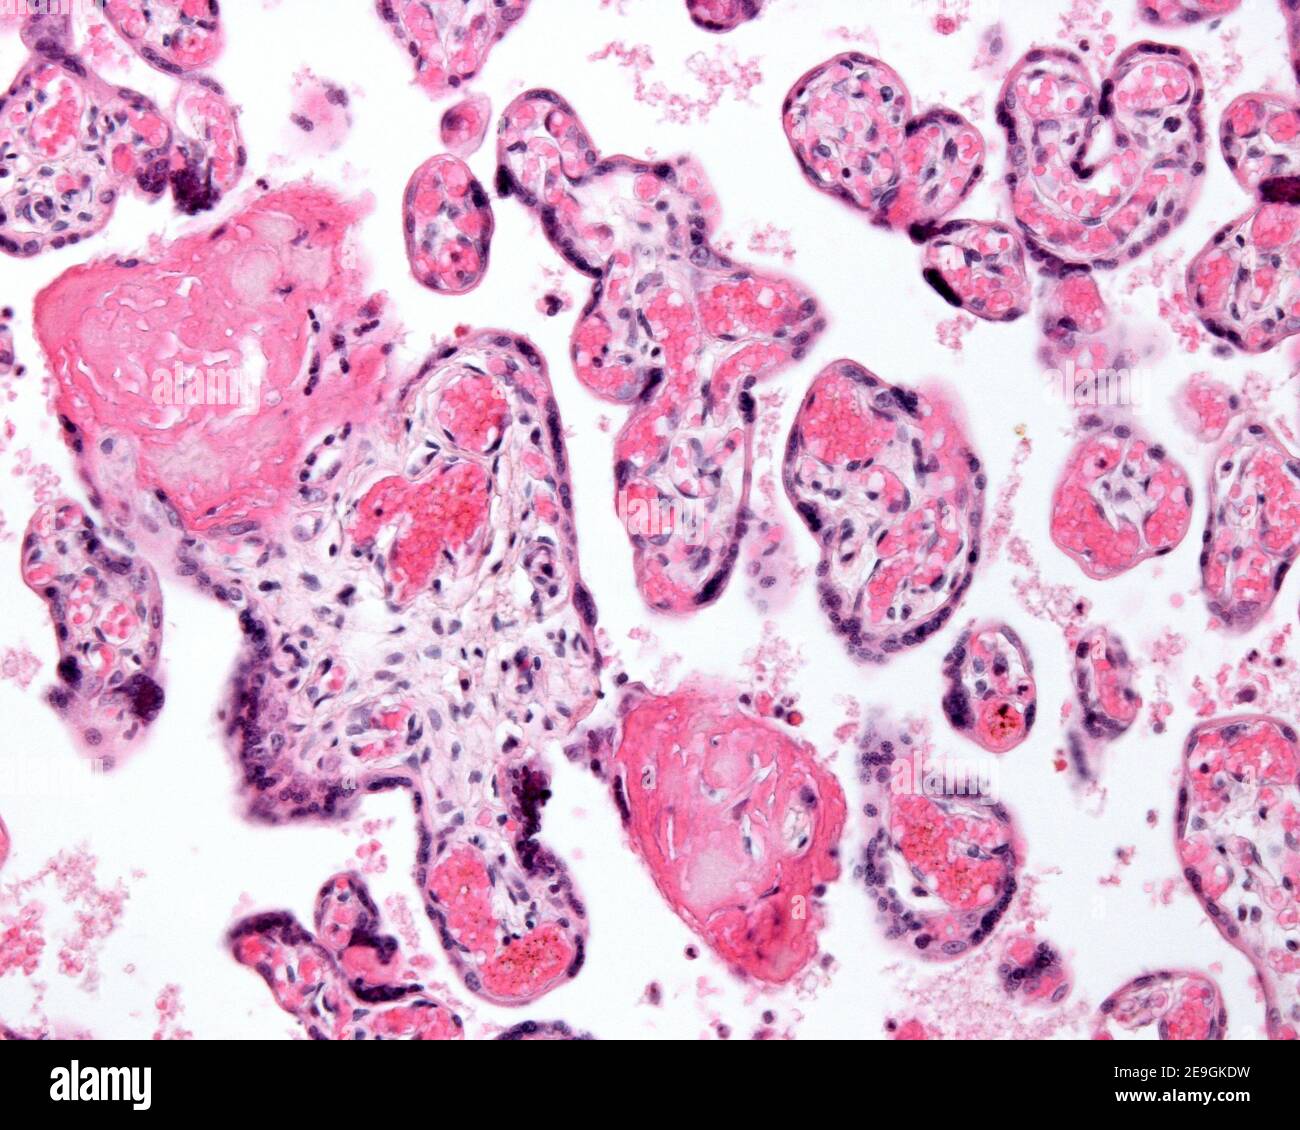 Placenta hypermature ou vieillissant. Les petits villosités chorioniques montrent de nombreux vaisseaux sanguins fœtaux, des nœuds syncytiaux et des amas de fibrine. Banque D'Images